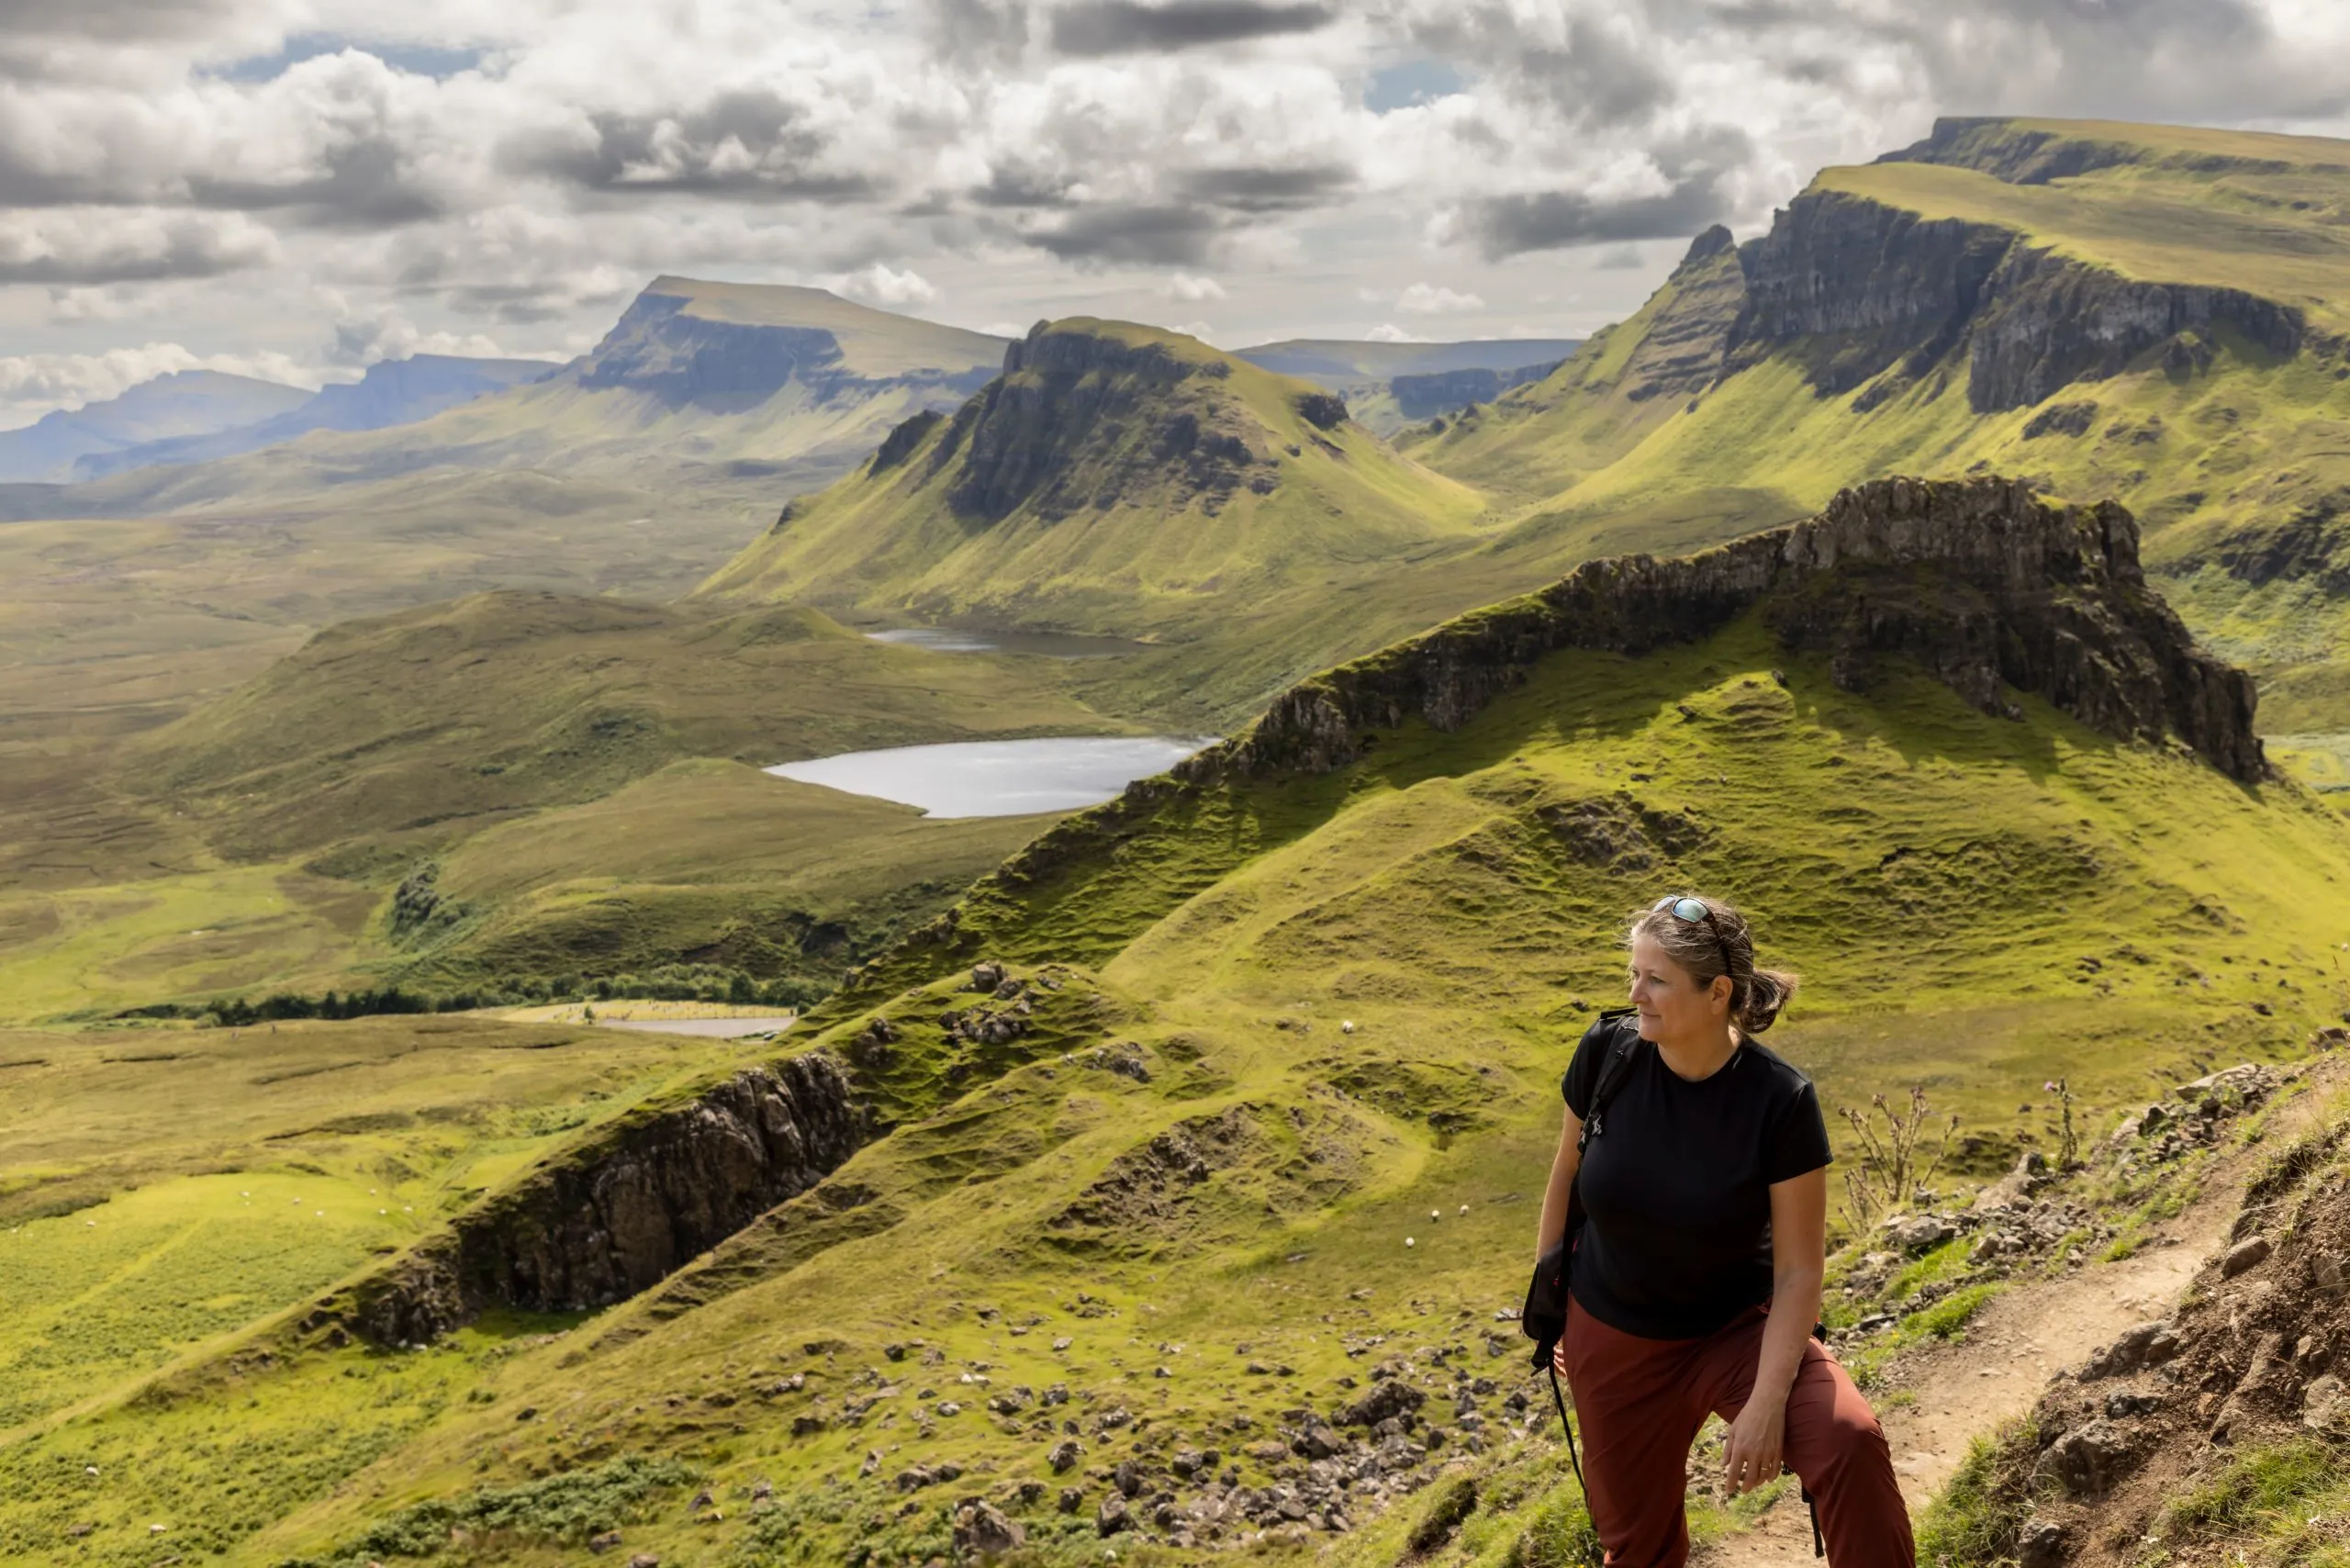 escursione femminile sulla catena montuosa Quiraing. È una formazione geologica dell'isola scozzese di Skye e un paradiso per gli escursionisti.